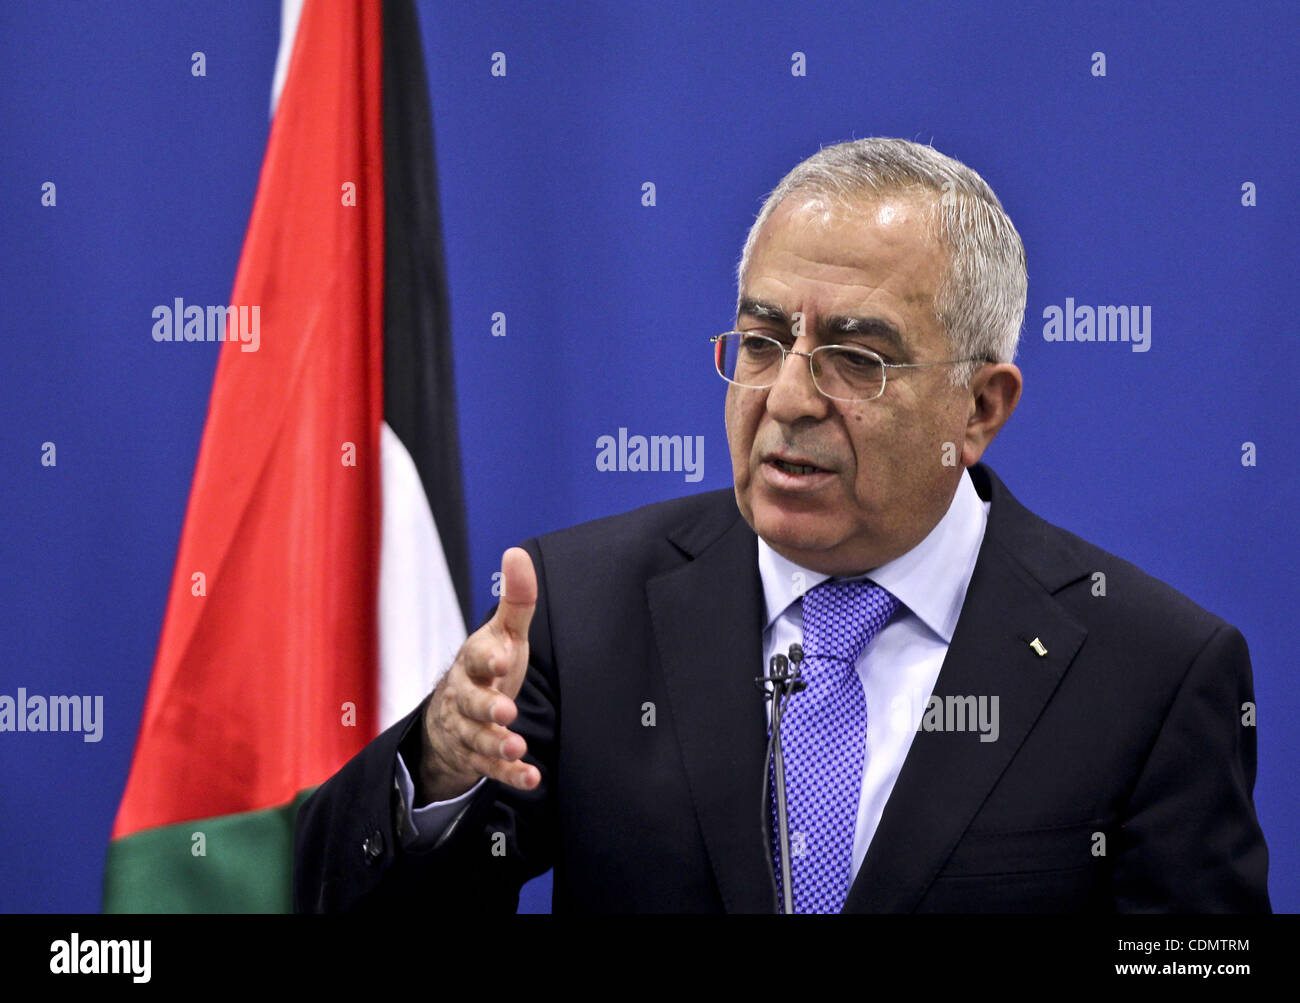 Palestinesi il ministro del Pime, Salam Fayyad parla durante una conferenza stampa sui risultati della riunione AHLC in Cisgiordania città di Ramallah il 14 aprile 2011. Foto di Mustafa Abu Dayeh Foto Stock